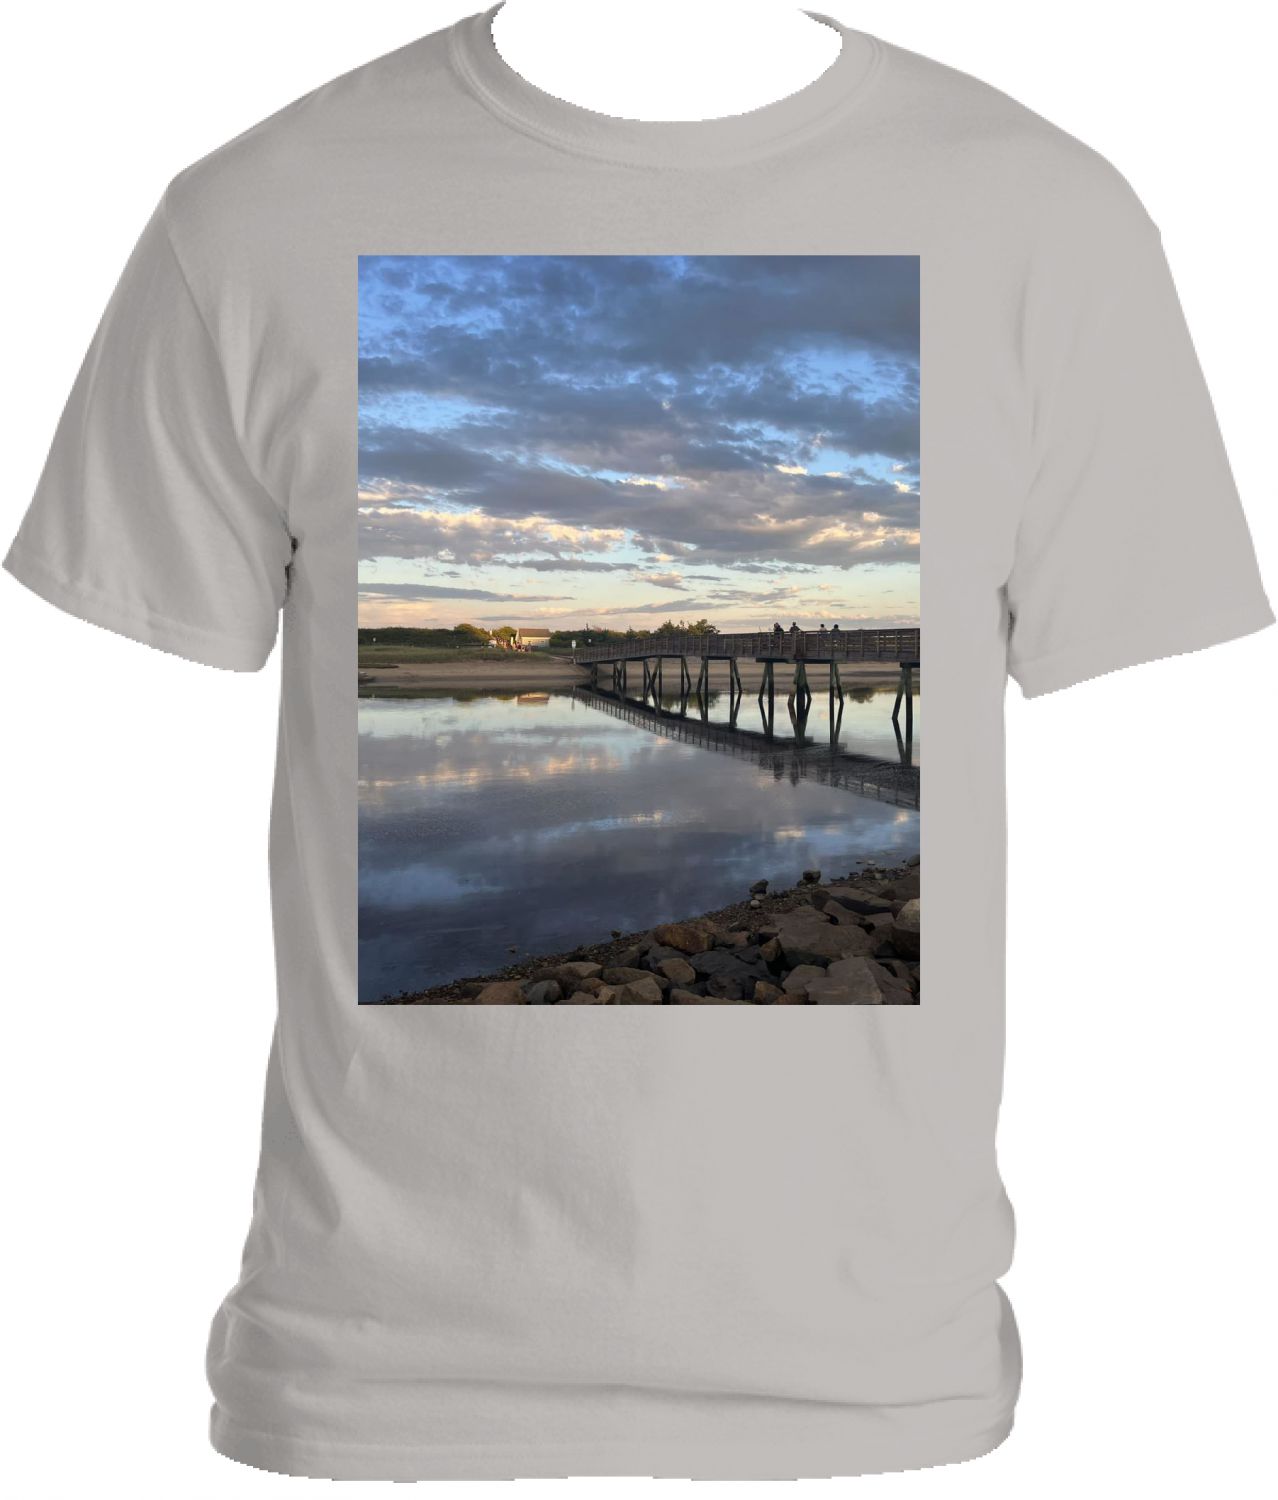 Ogunquit Footbridge Tshirt